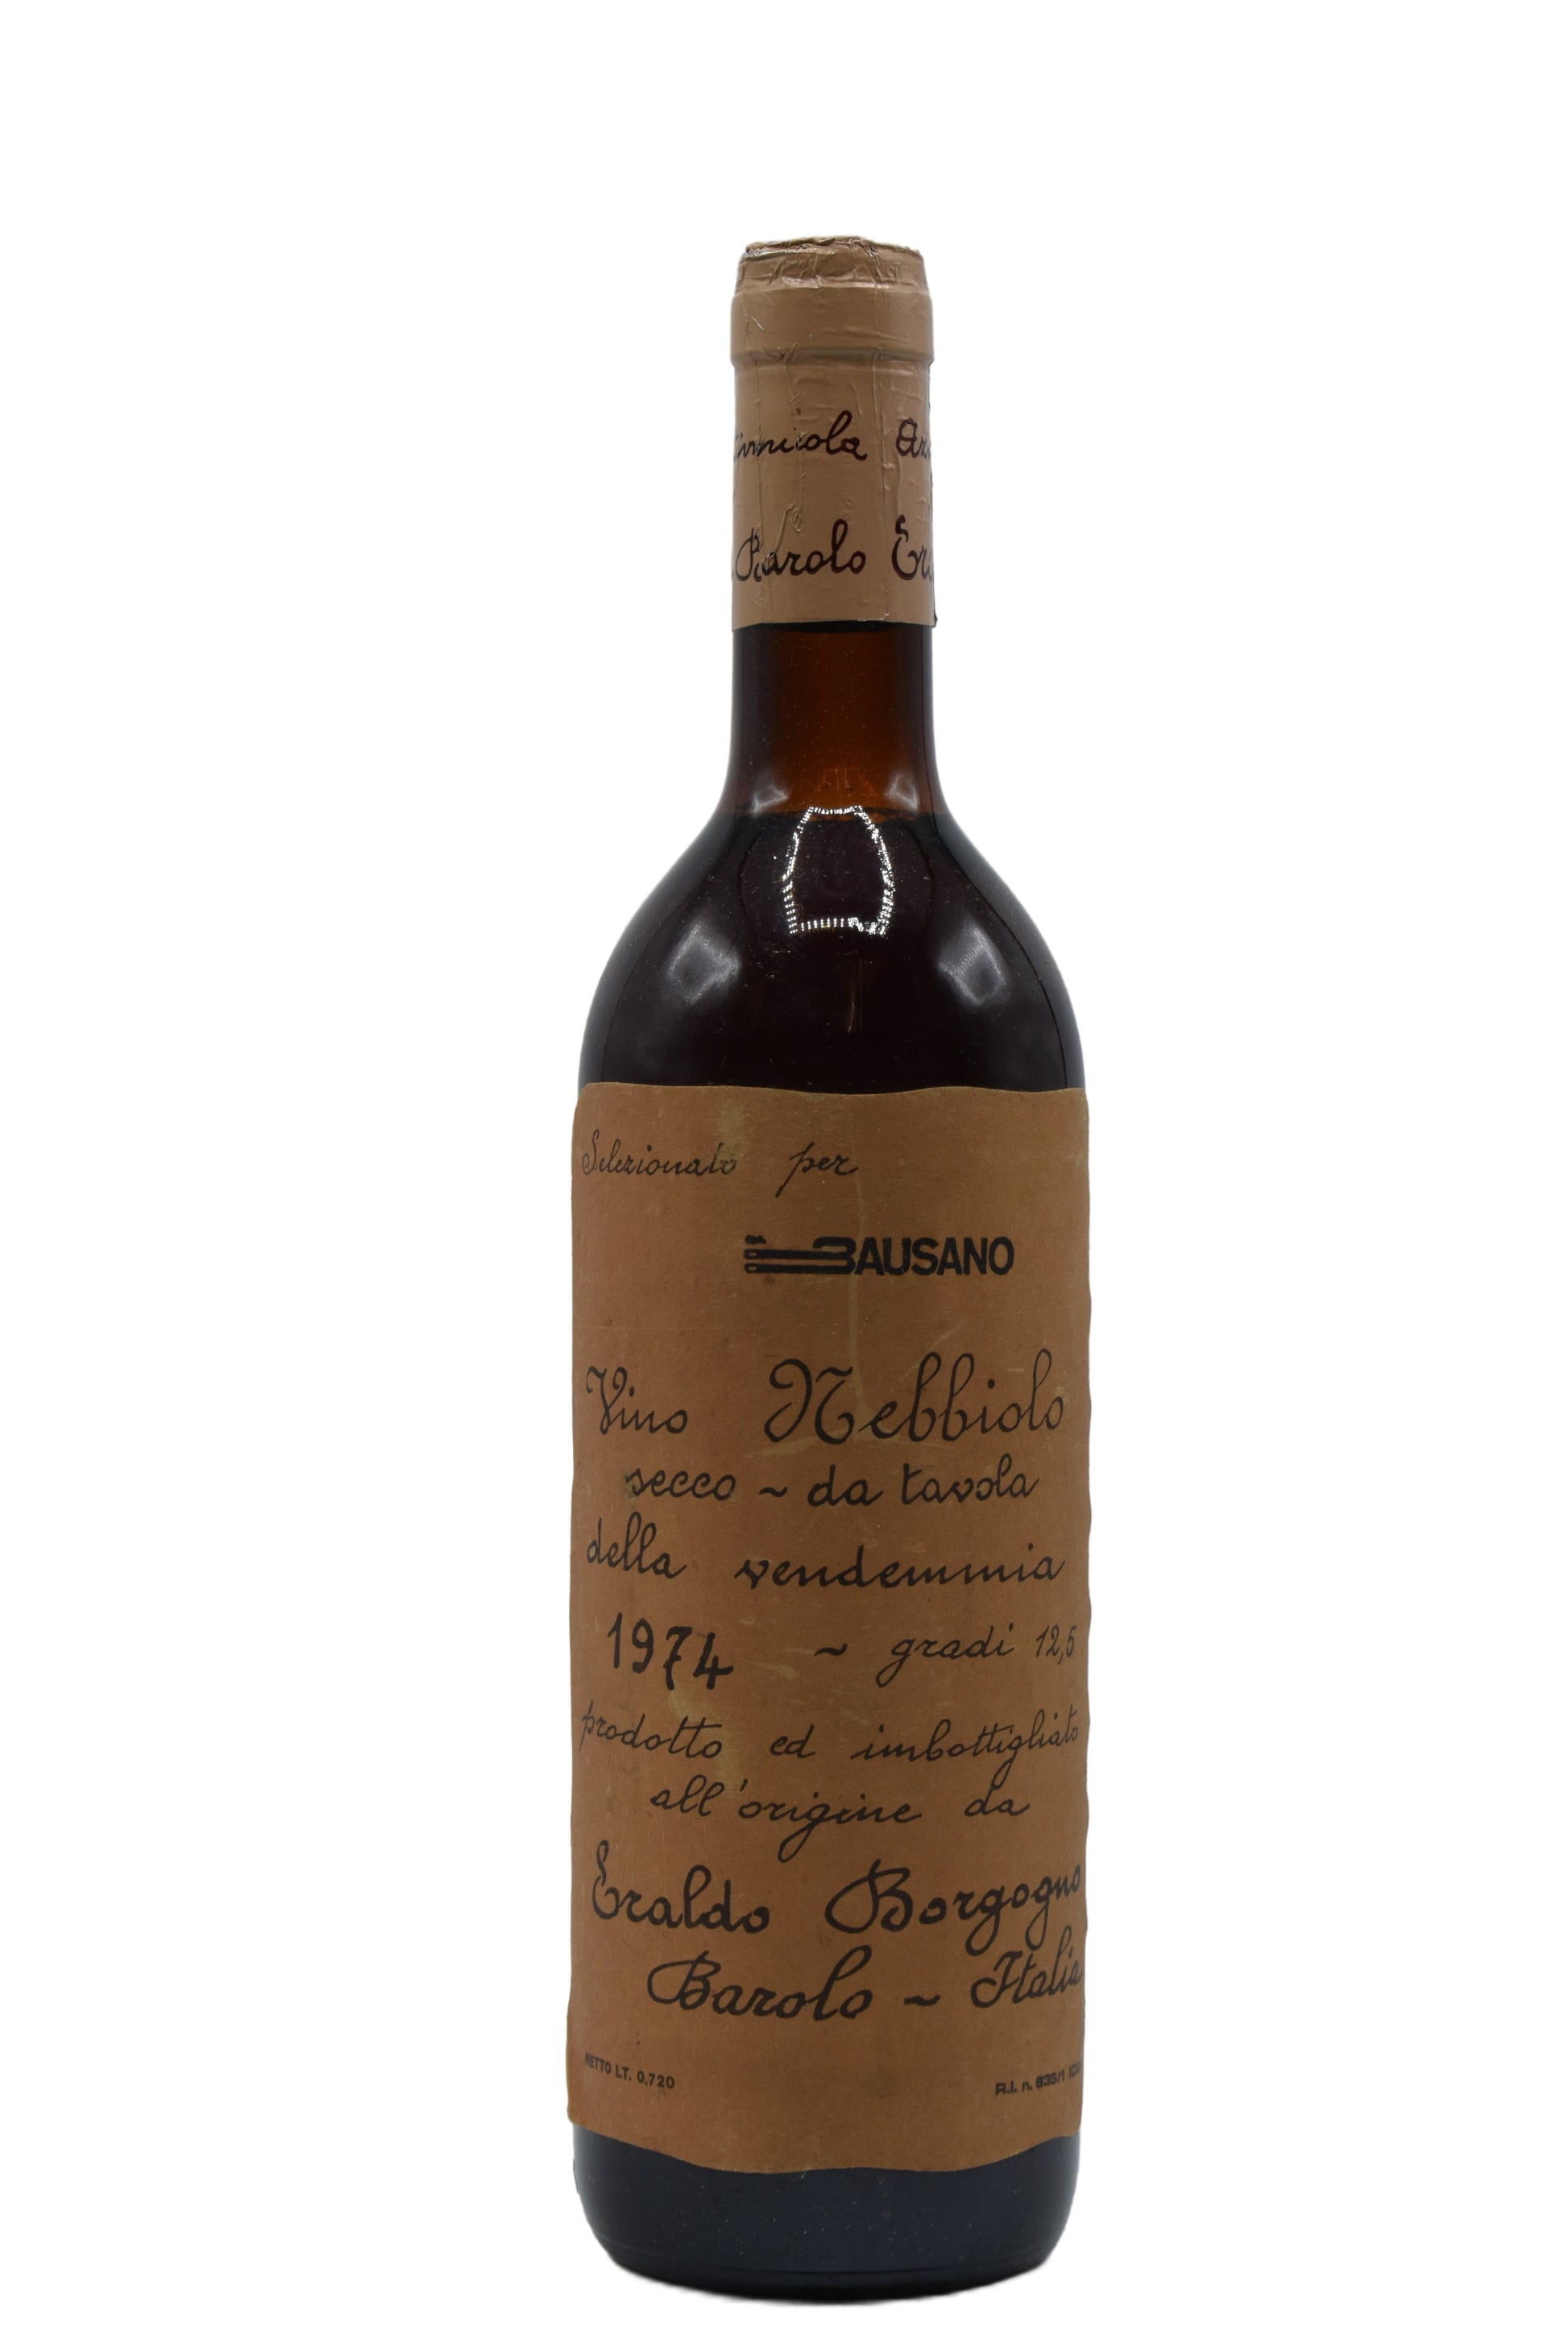 1974 Eraldo Borgogno Langhe Nebbiolo 750ml - Walker Wine Co.